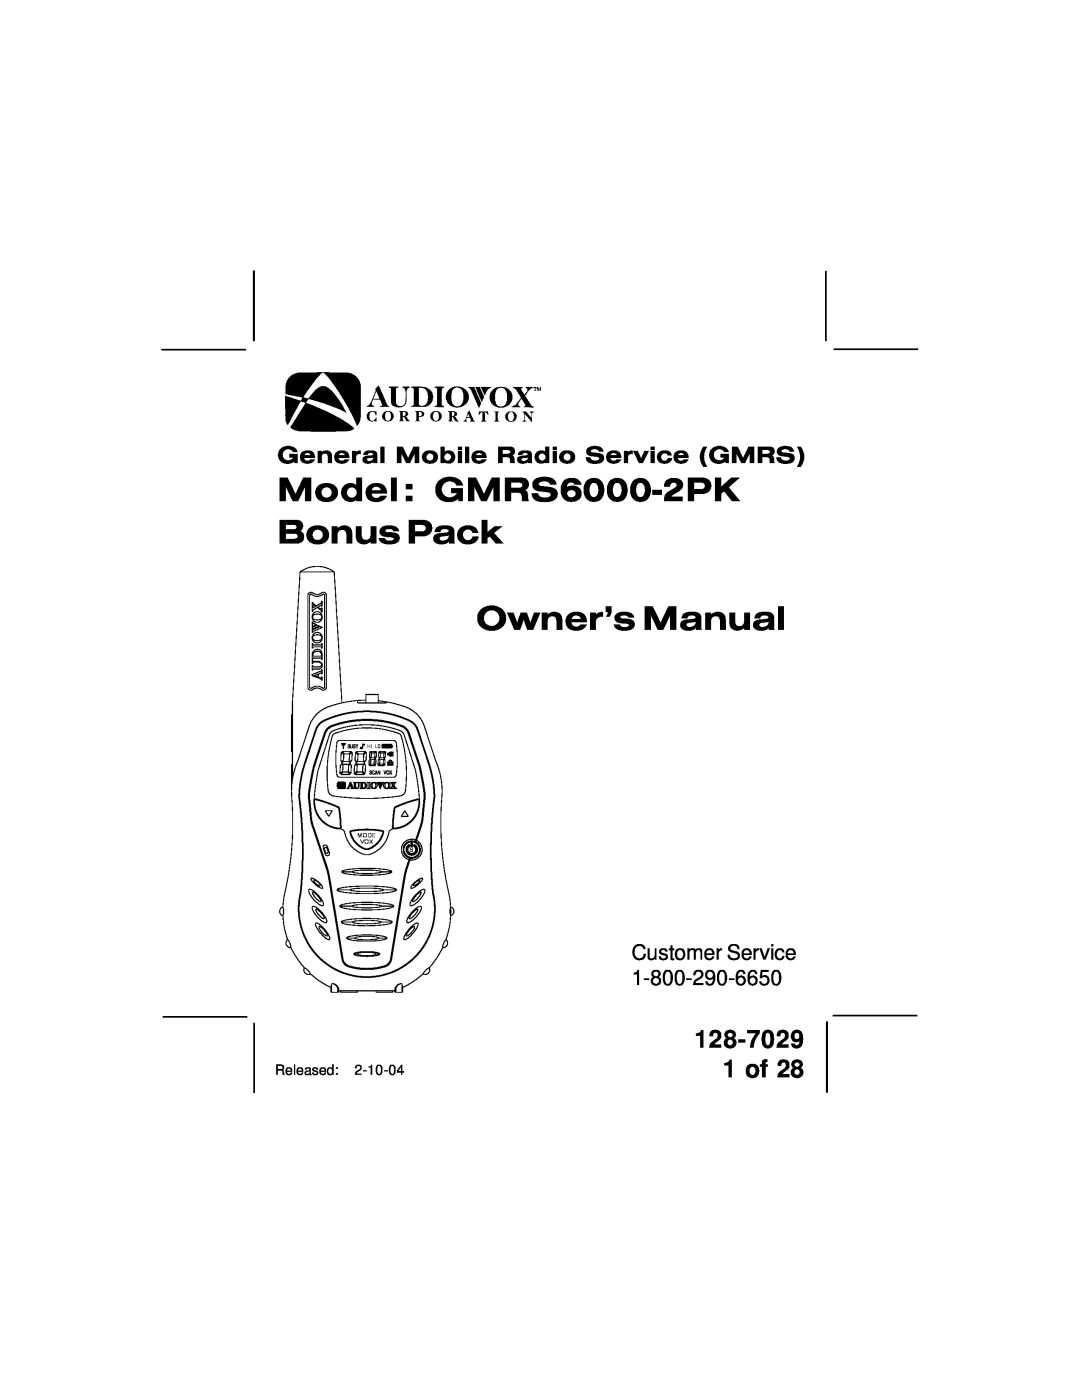 Audiovox owner manual 128-7029, 1 of, Customer Service, Model GMRS6000-2PK Bonus Pack Owner’s Manual, Mode Vox S, Hi Lo 